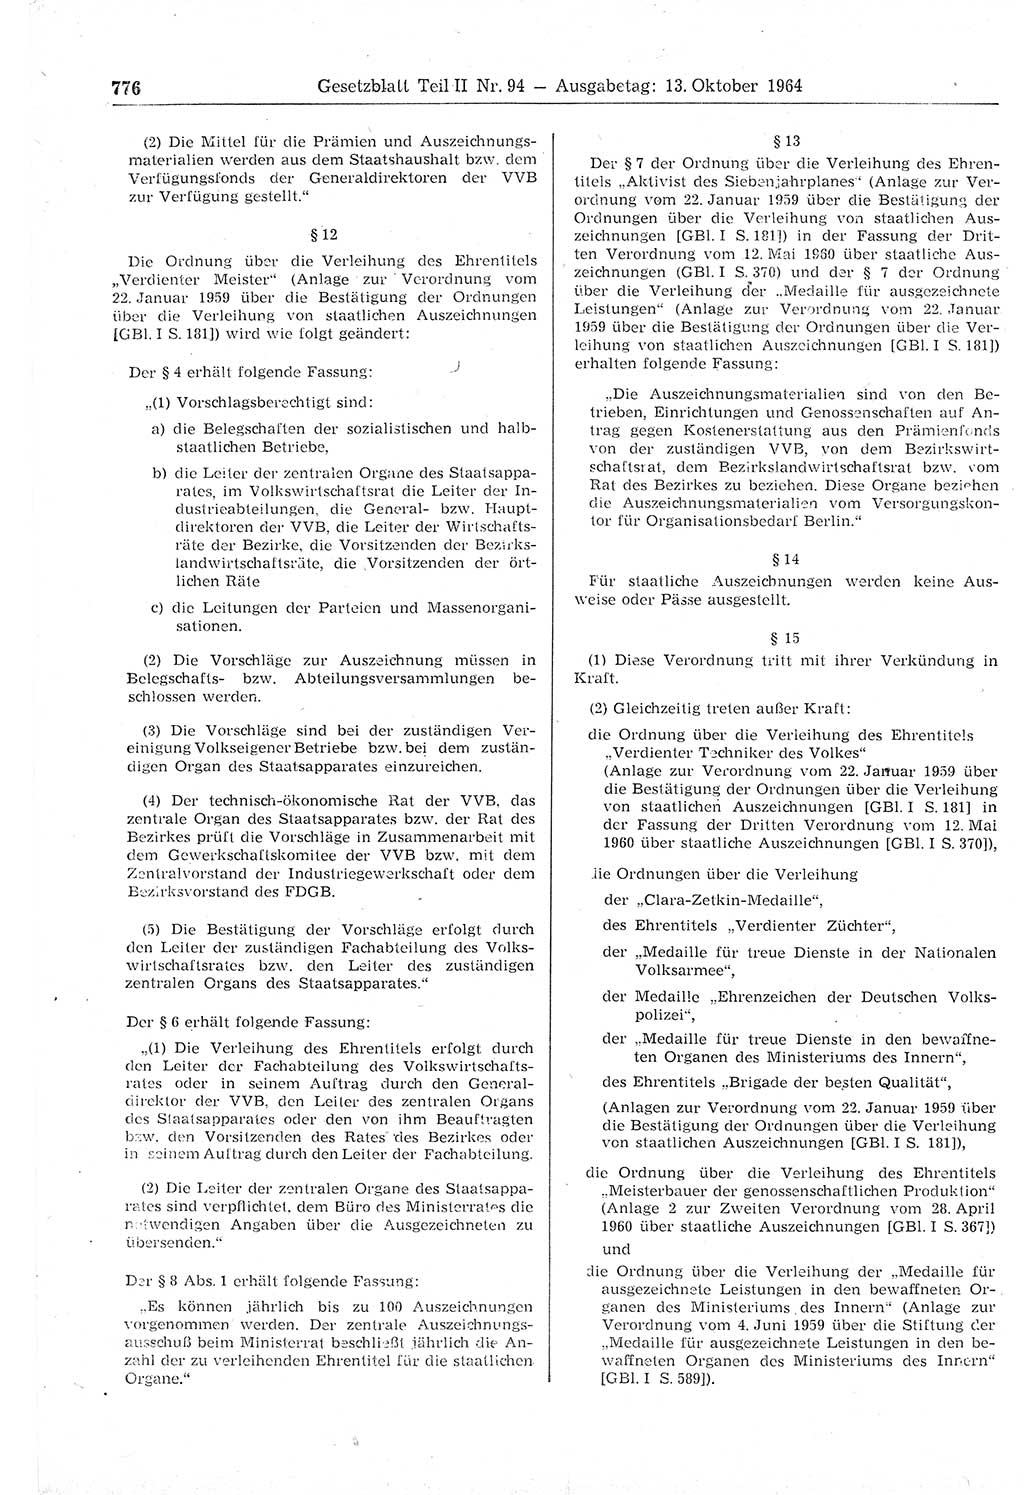 Gesetzblatt (GBl.) der Deutschen Demokratischen Republik (DDR) Teil ⅠⅠ 1964, Seite 776 (GBl. DDR ⅠⅠ 1964, S. 776)